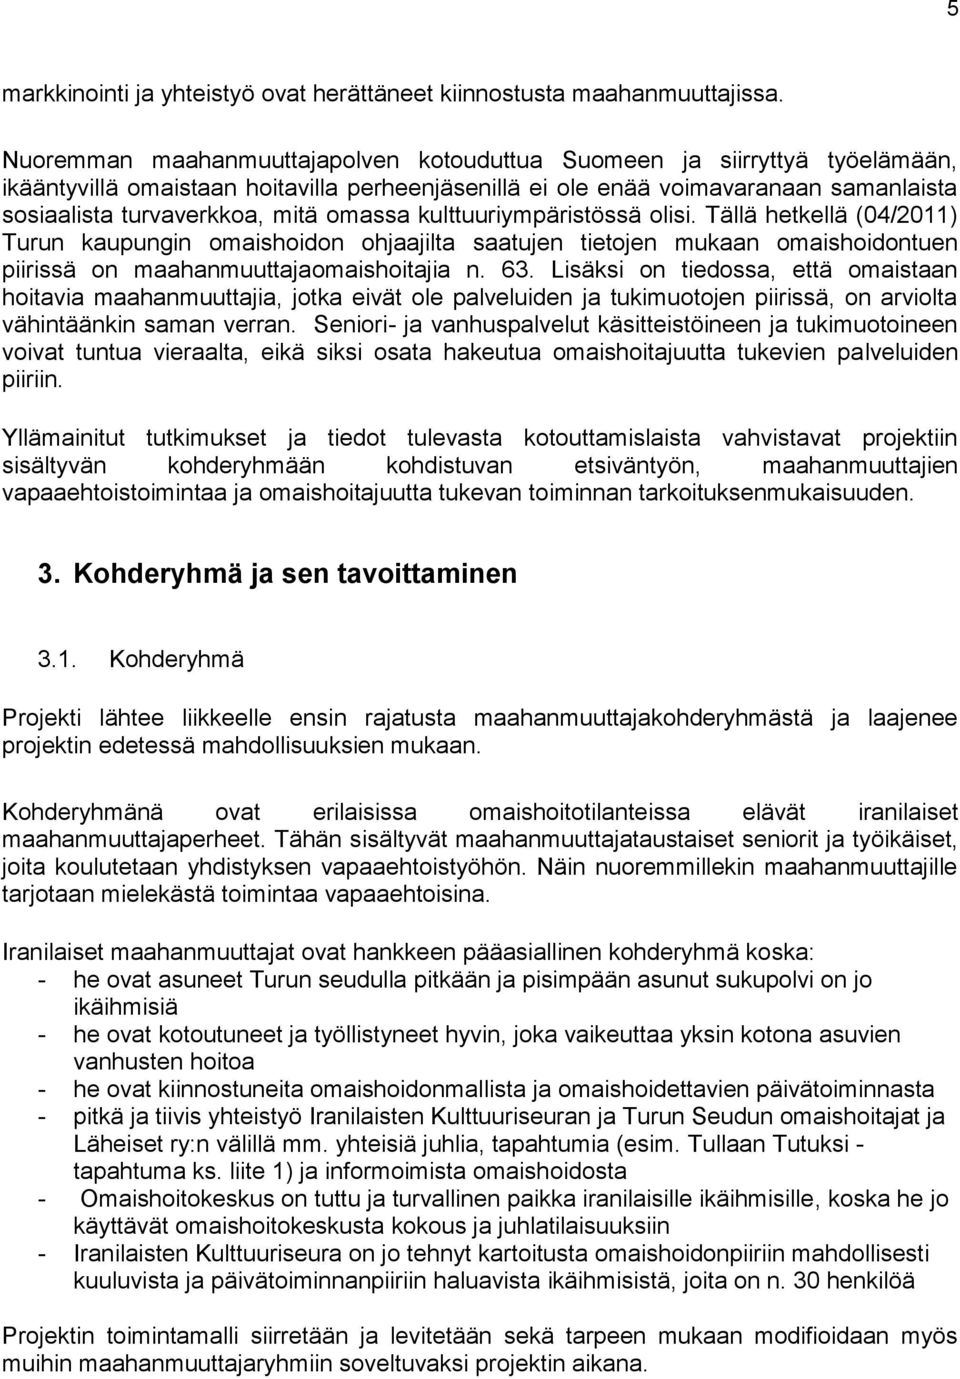 omassa kulttuuriympäristössä olisi. Tällä hetkellä (04/2011) Turun kaupungin omaishoidon ohjaajilta saatujen tietojen mukaan omaishoidontuen piirissä on maahanmuuttajaomaishoitajia n. 63.